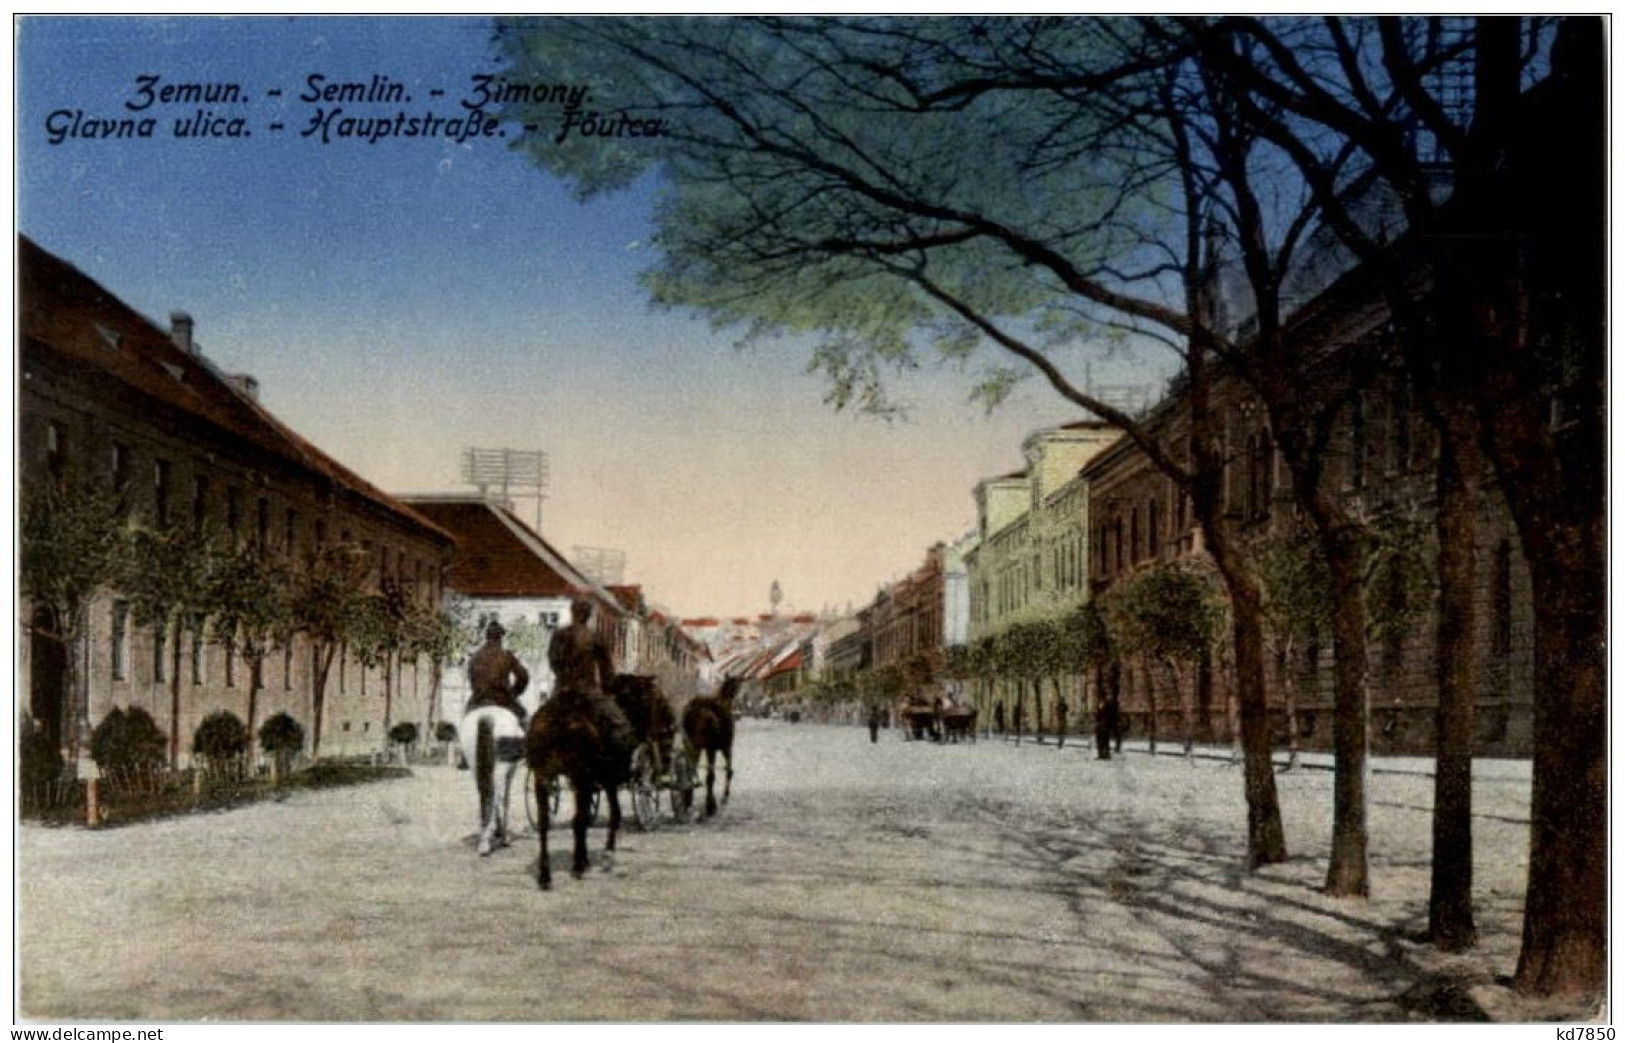 Semlin - Hauptstrasse - Serbia